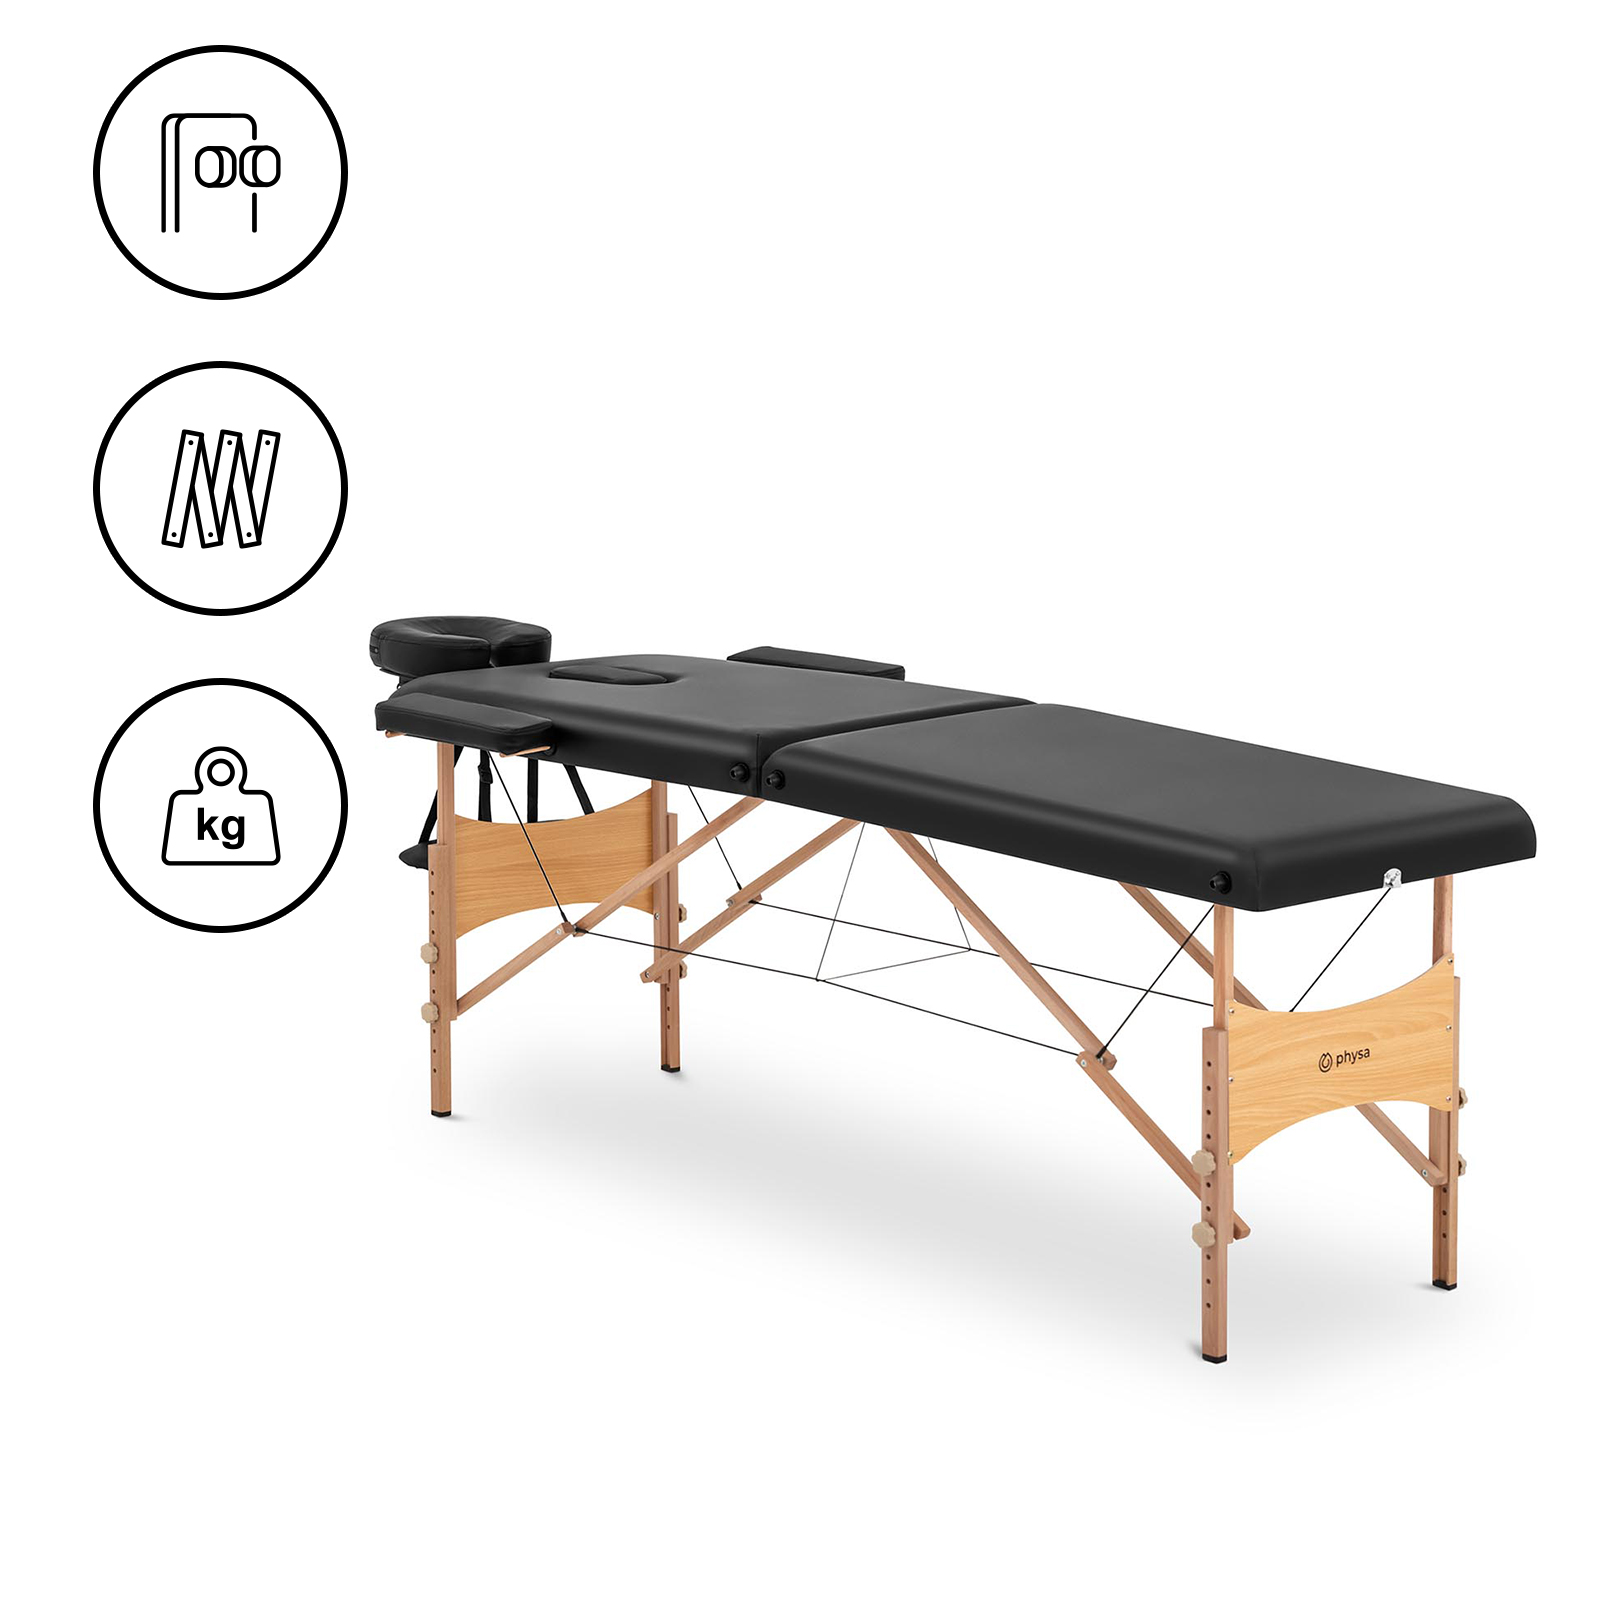 Πτυσσόμενο τραπέζι μασάζ - 185 x 60 x 62 cm - 227 kg - Μαύρο